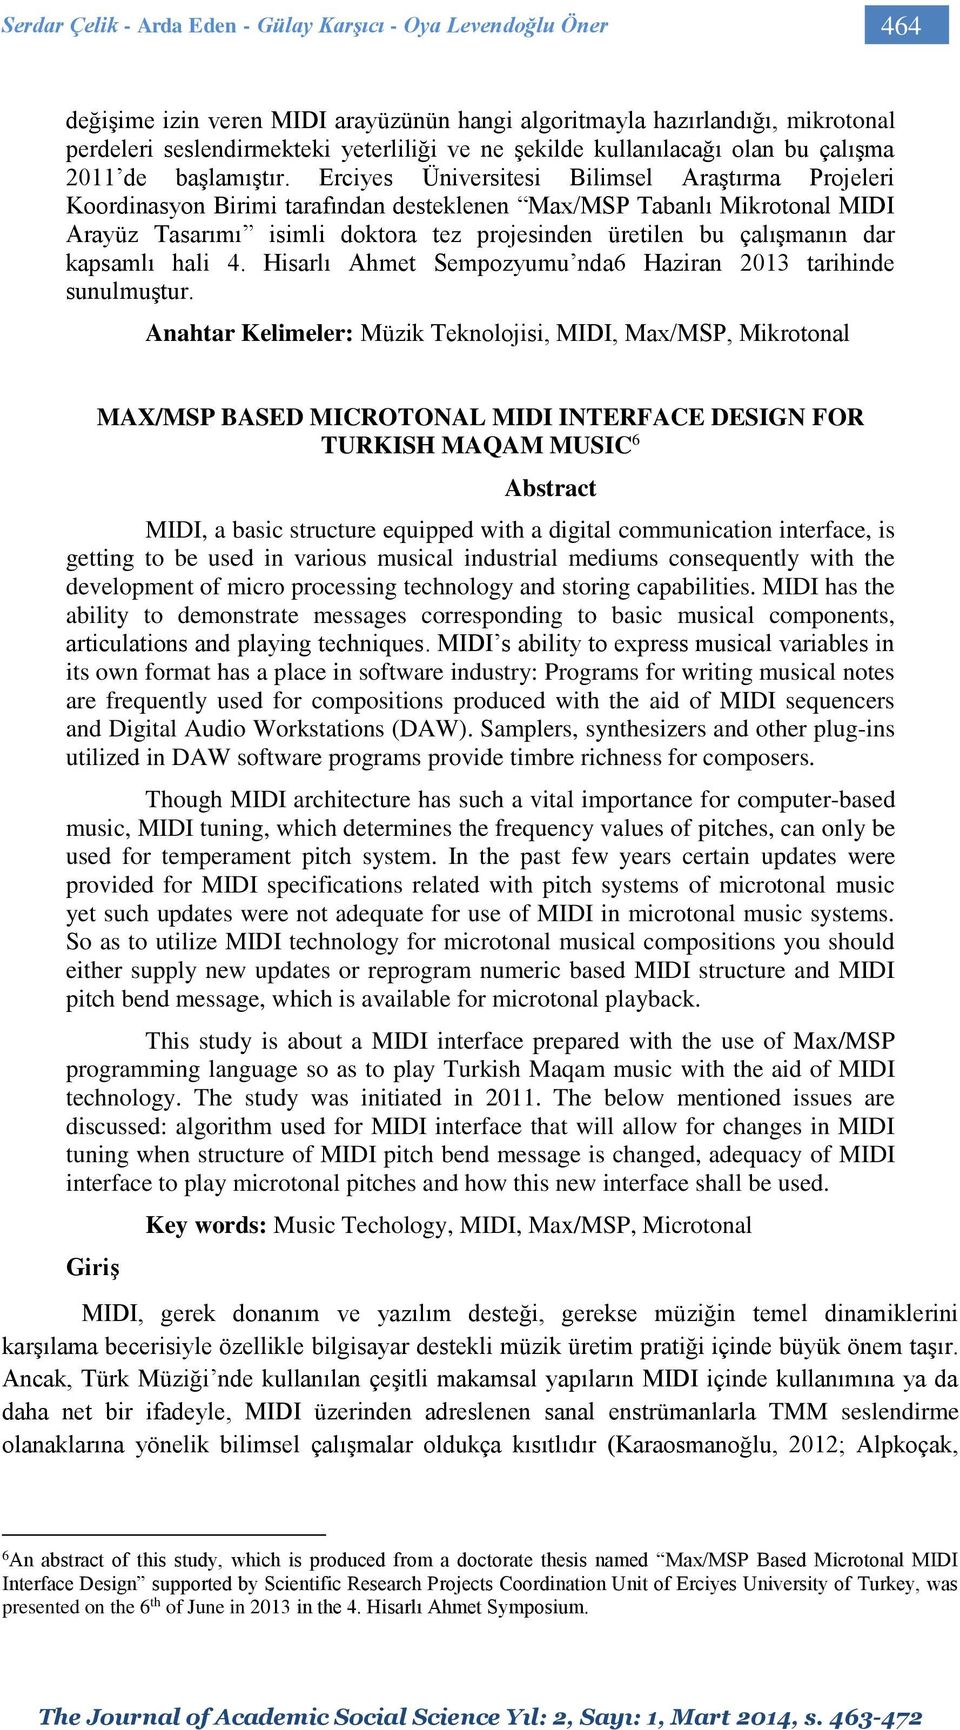 Erciyes Üniversitesi Bilimsel Araştırma Projeleri Koordinasyon Birimi tarafından desteklenen Max/MSP Tabanlı Mikrotonal MIDI Arayüz Tasarımı isimli doktora tez projesinden üretilen bu çalışmanın dar